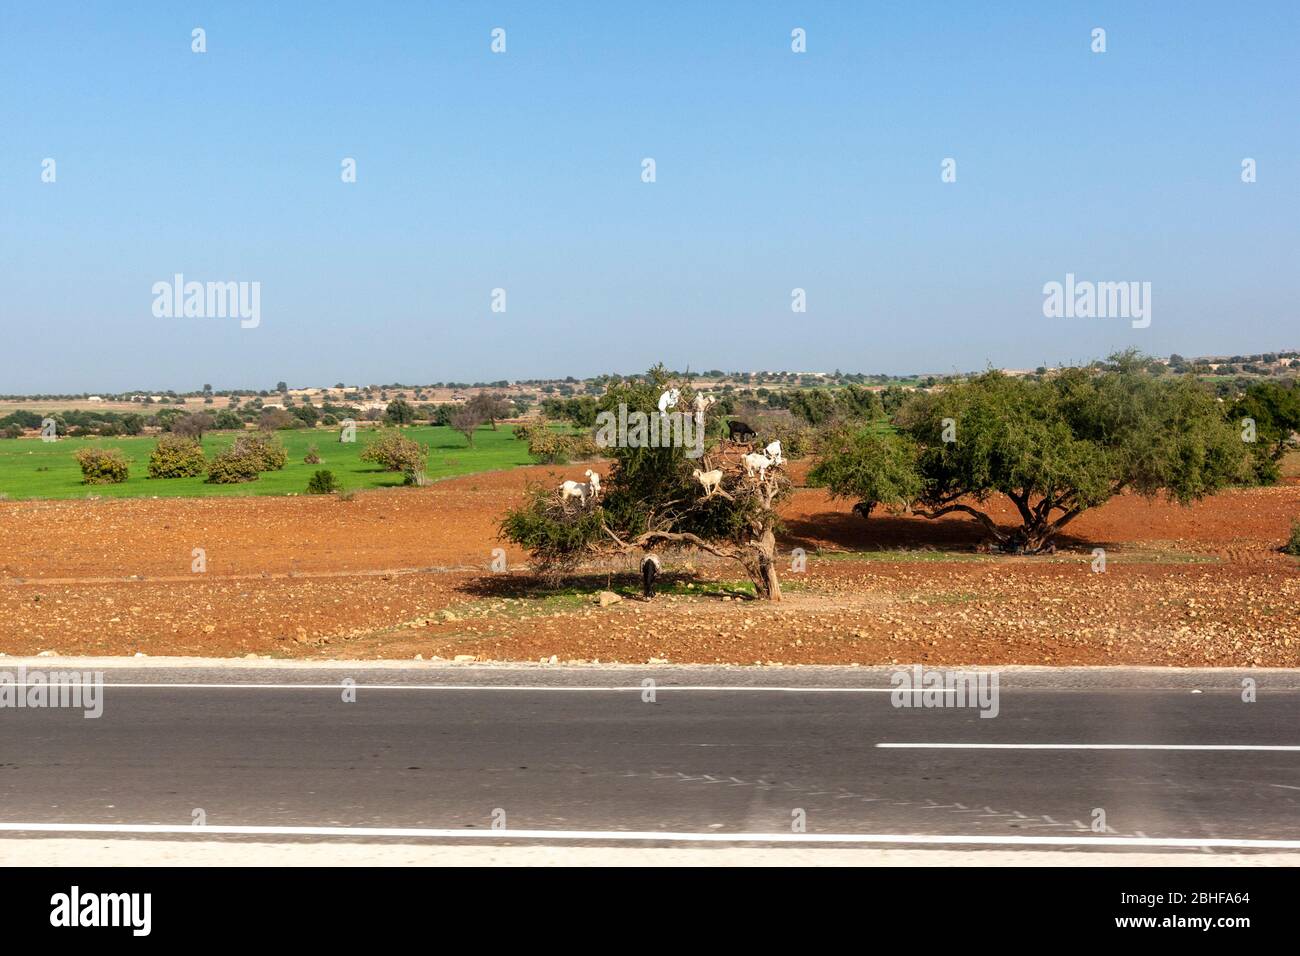 Ziegen, die in die niedrigen Äste des Argania-Baumes kletterten. Marrakesch, Marokko Stockfoto